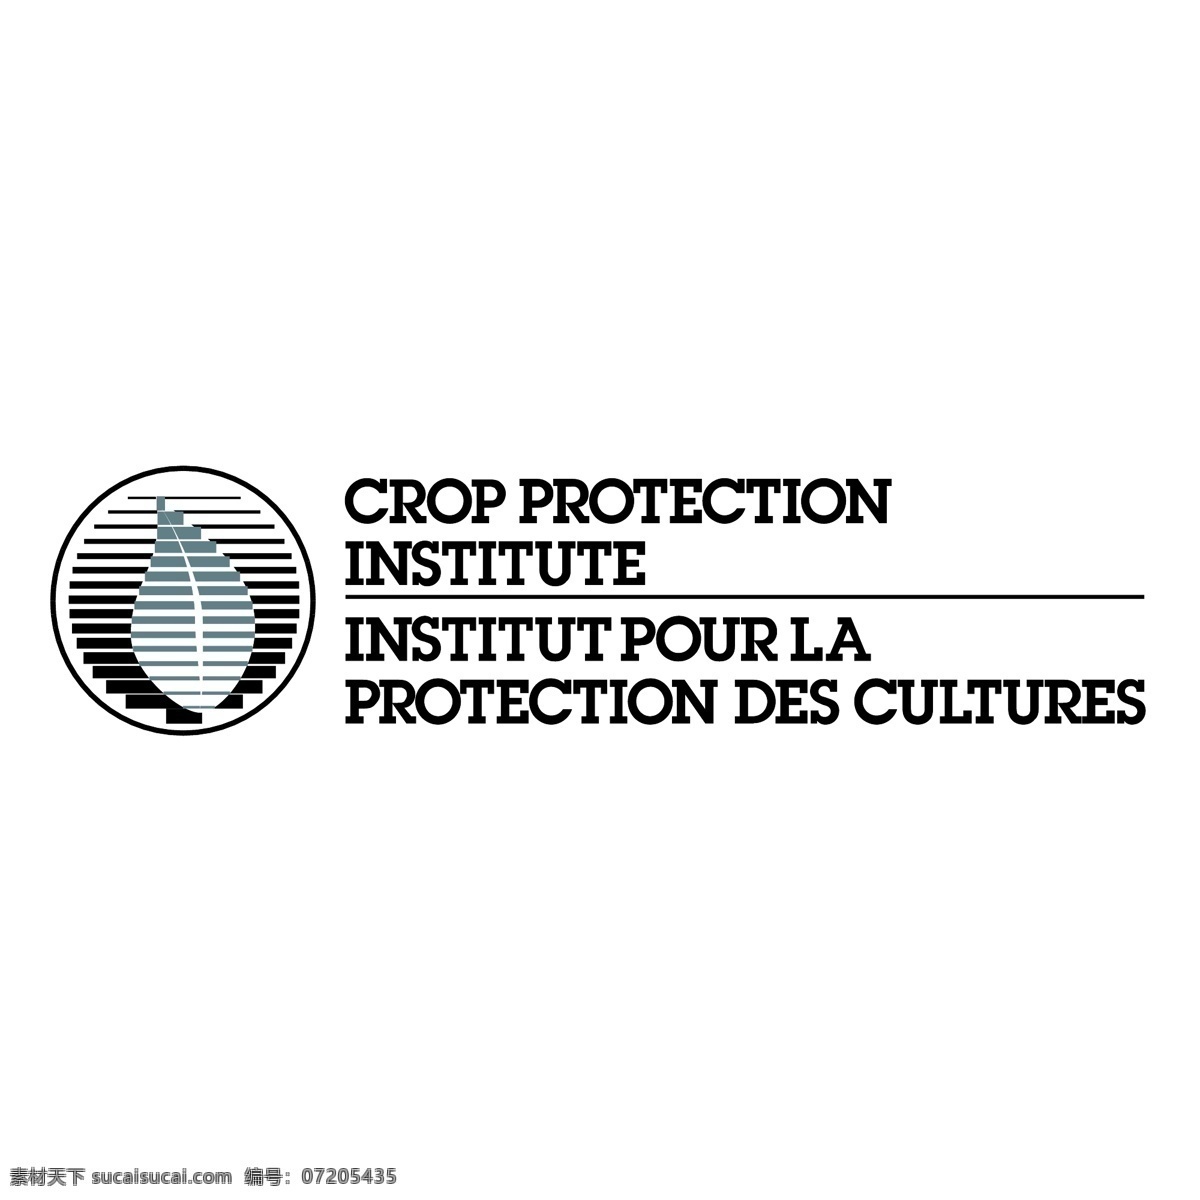 植物保护 研究所 作物 作物保护 保护 保护研究所 保护图像 免费 矢量 图像 向量的保护 保护自由向量 免费矢量 白色